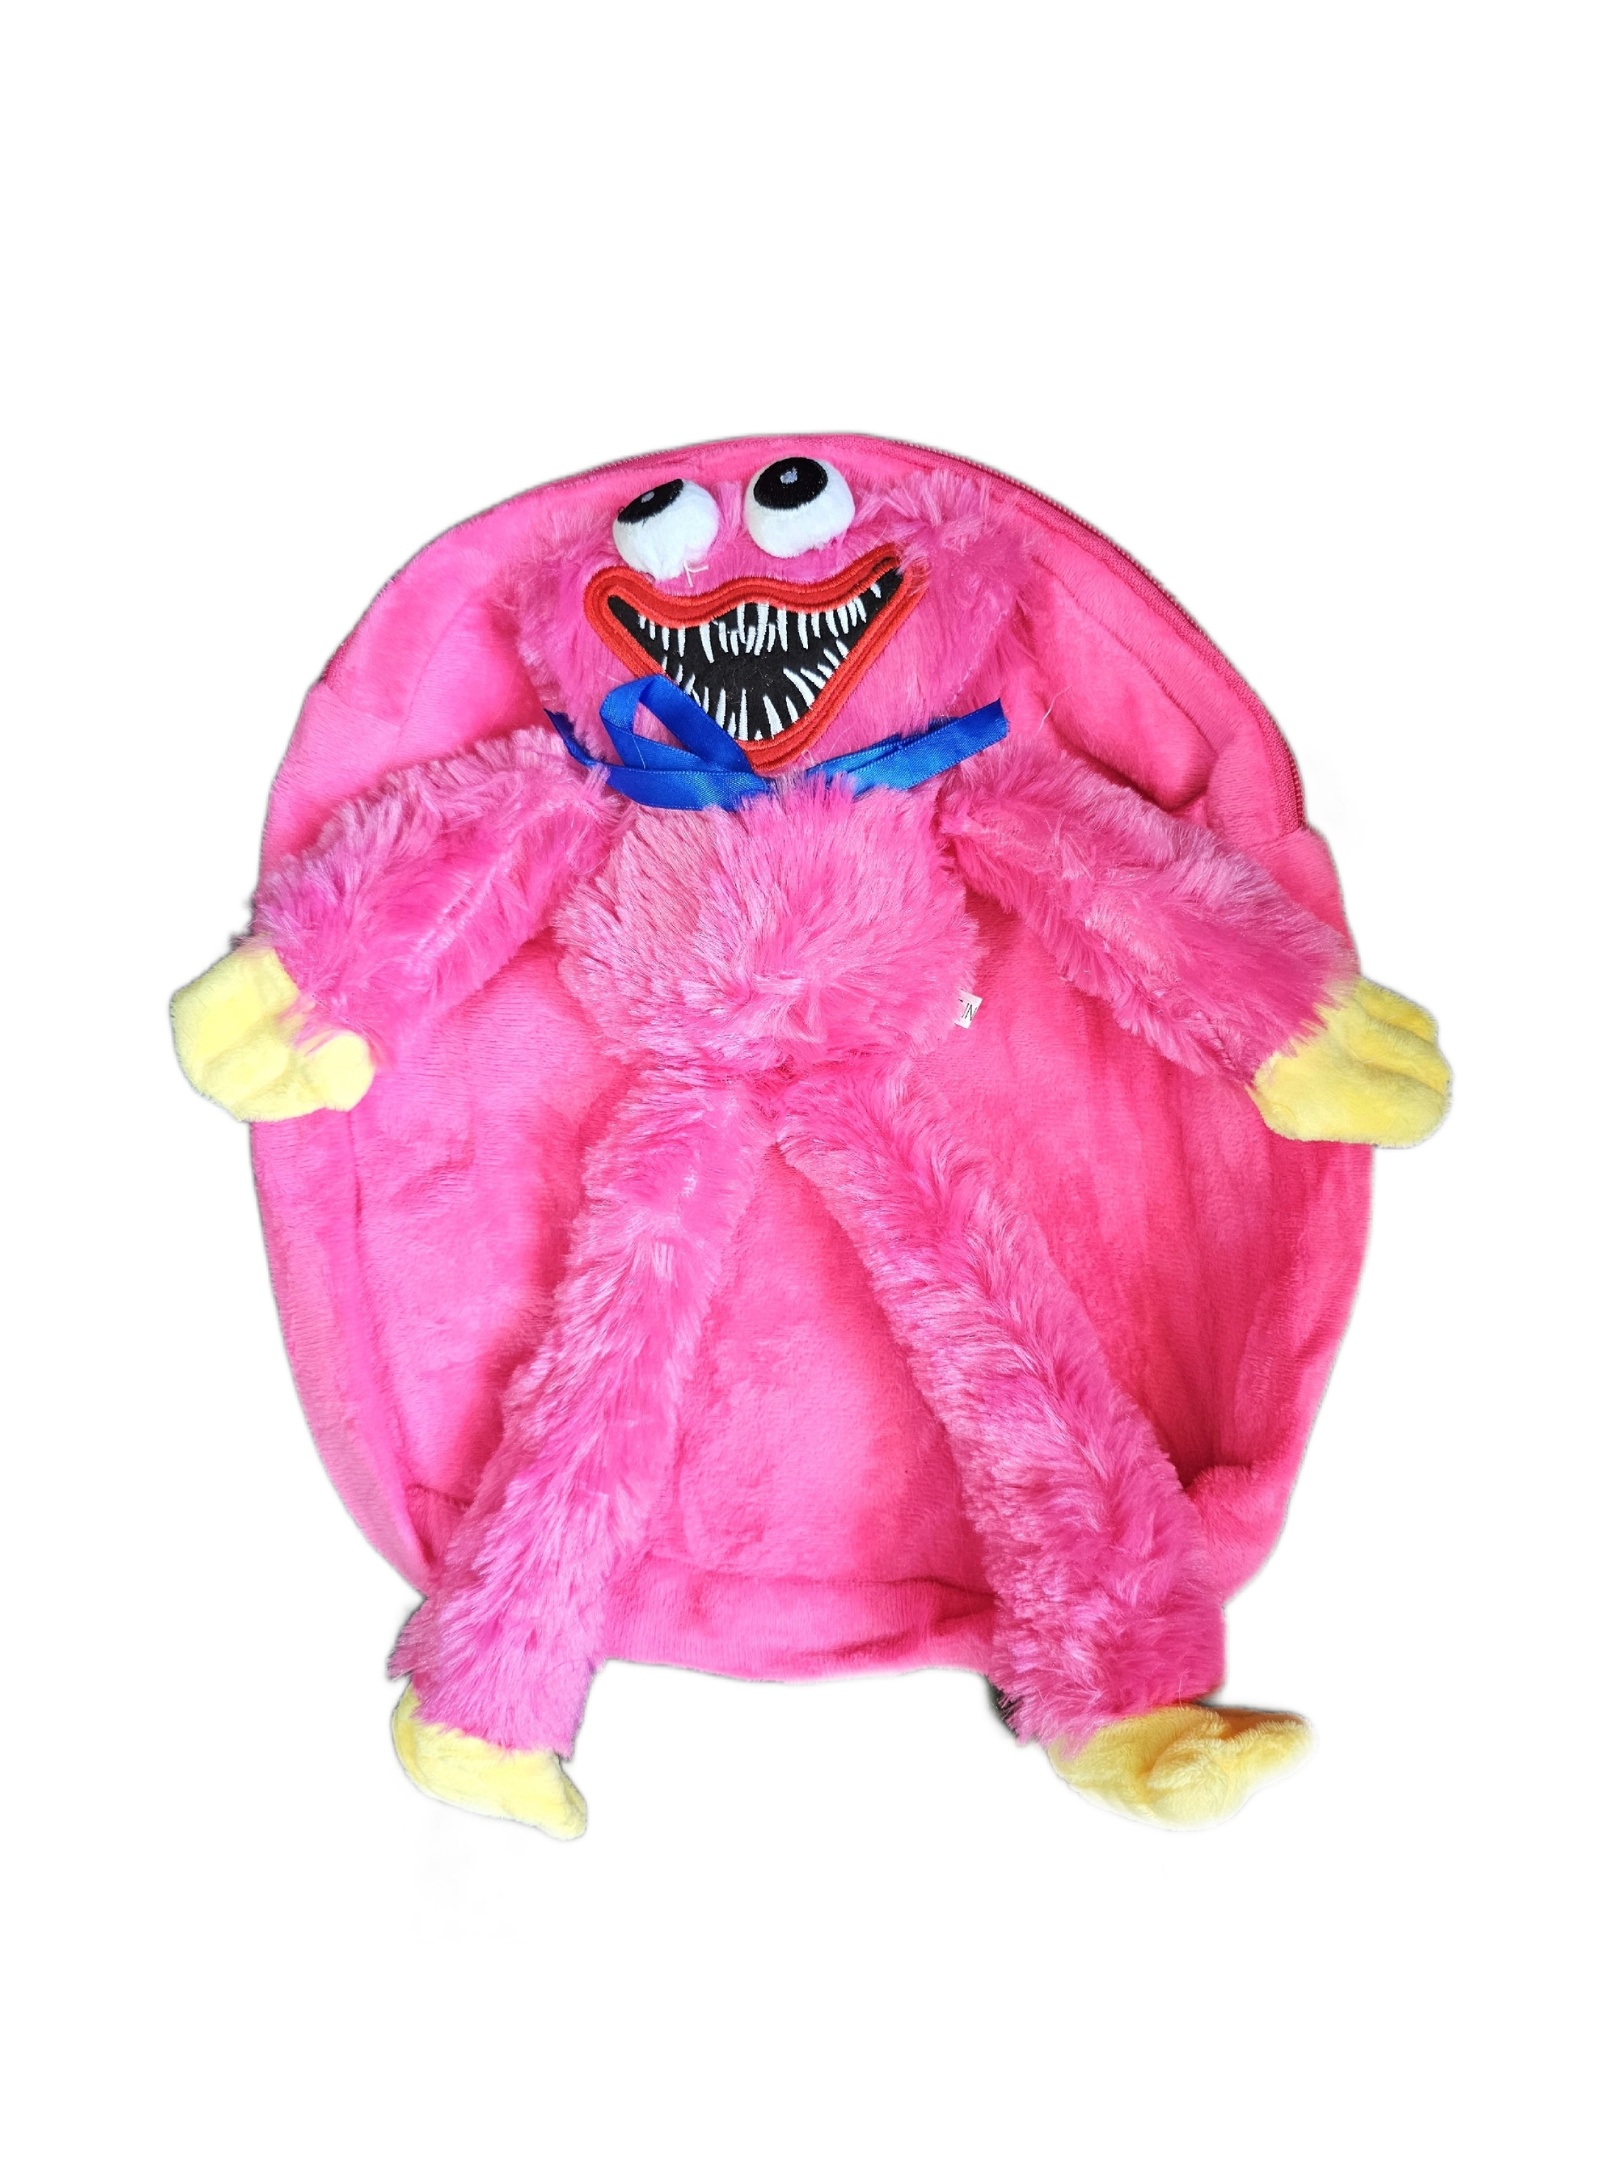 Рюкзак детский плюшевый с игрушкой Кисси Мисси Хаги Ваги, цвет розовый рюкзак школьный из текстиля 5 карманов розовый